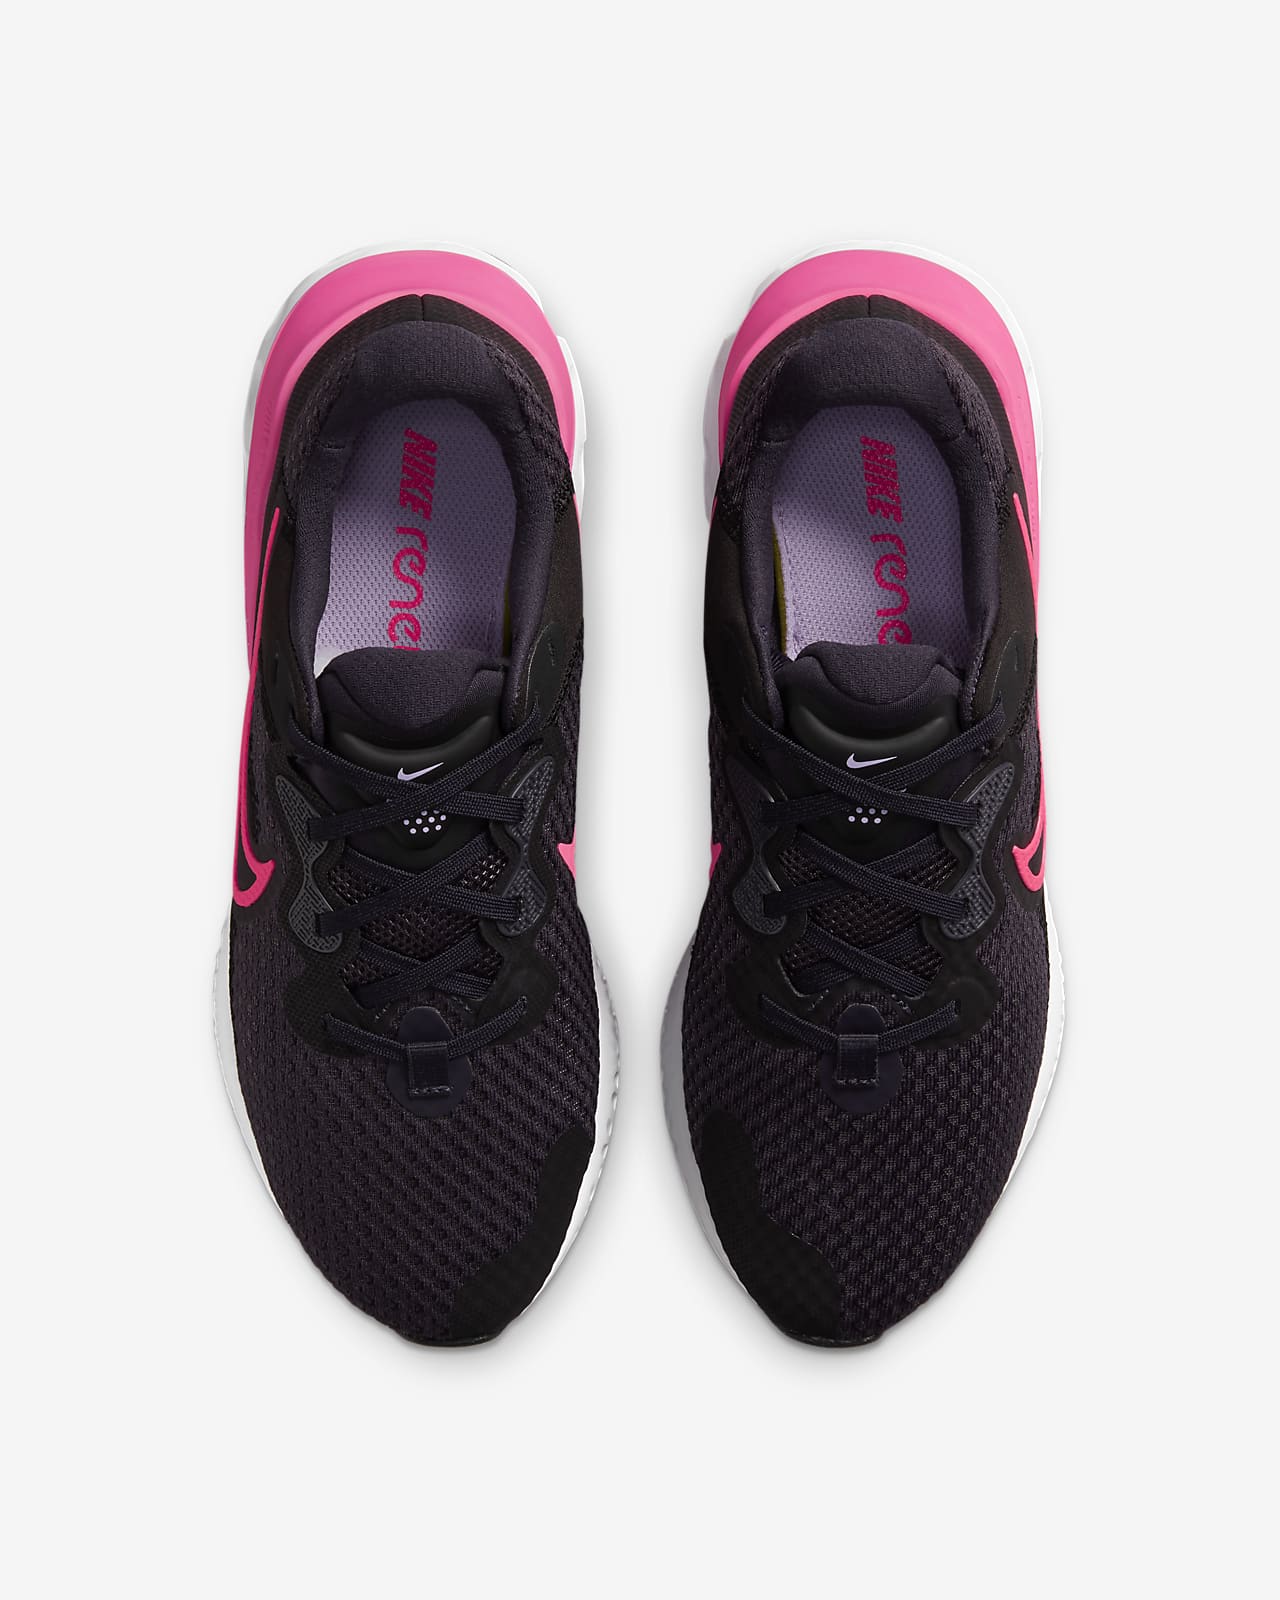 Calzado de en carretera mujer Nike Renew Run 2. Nike.com